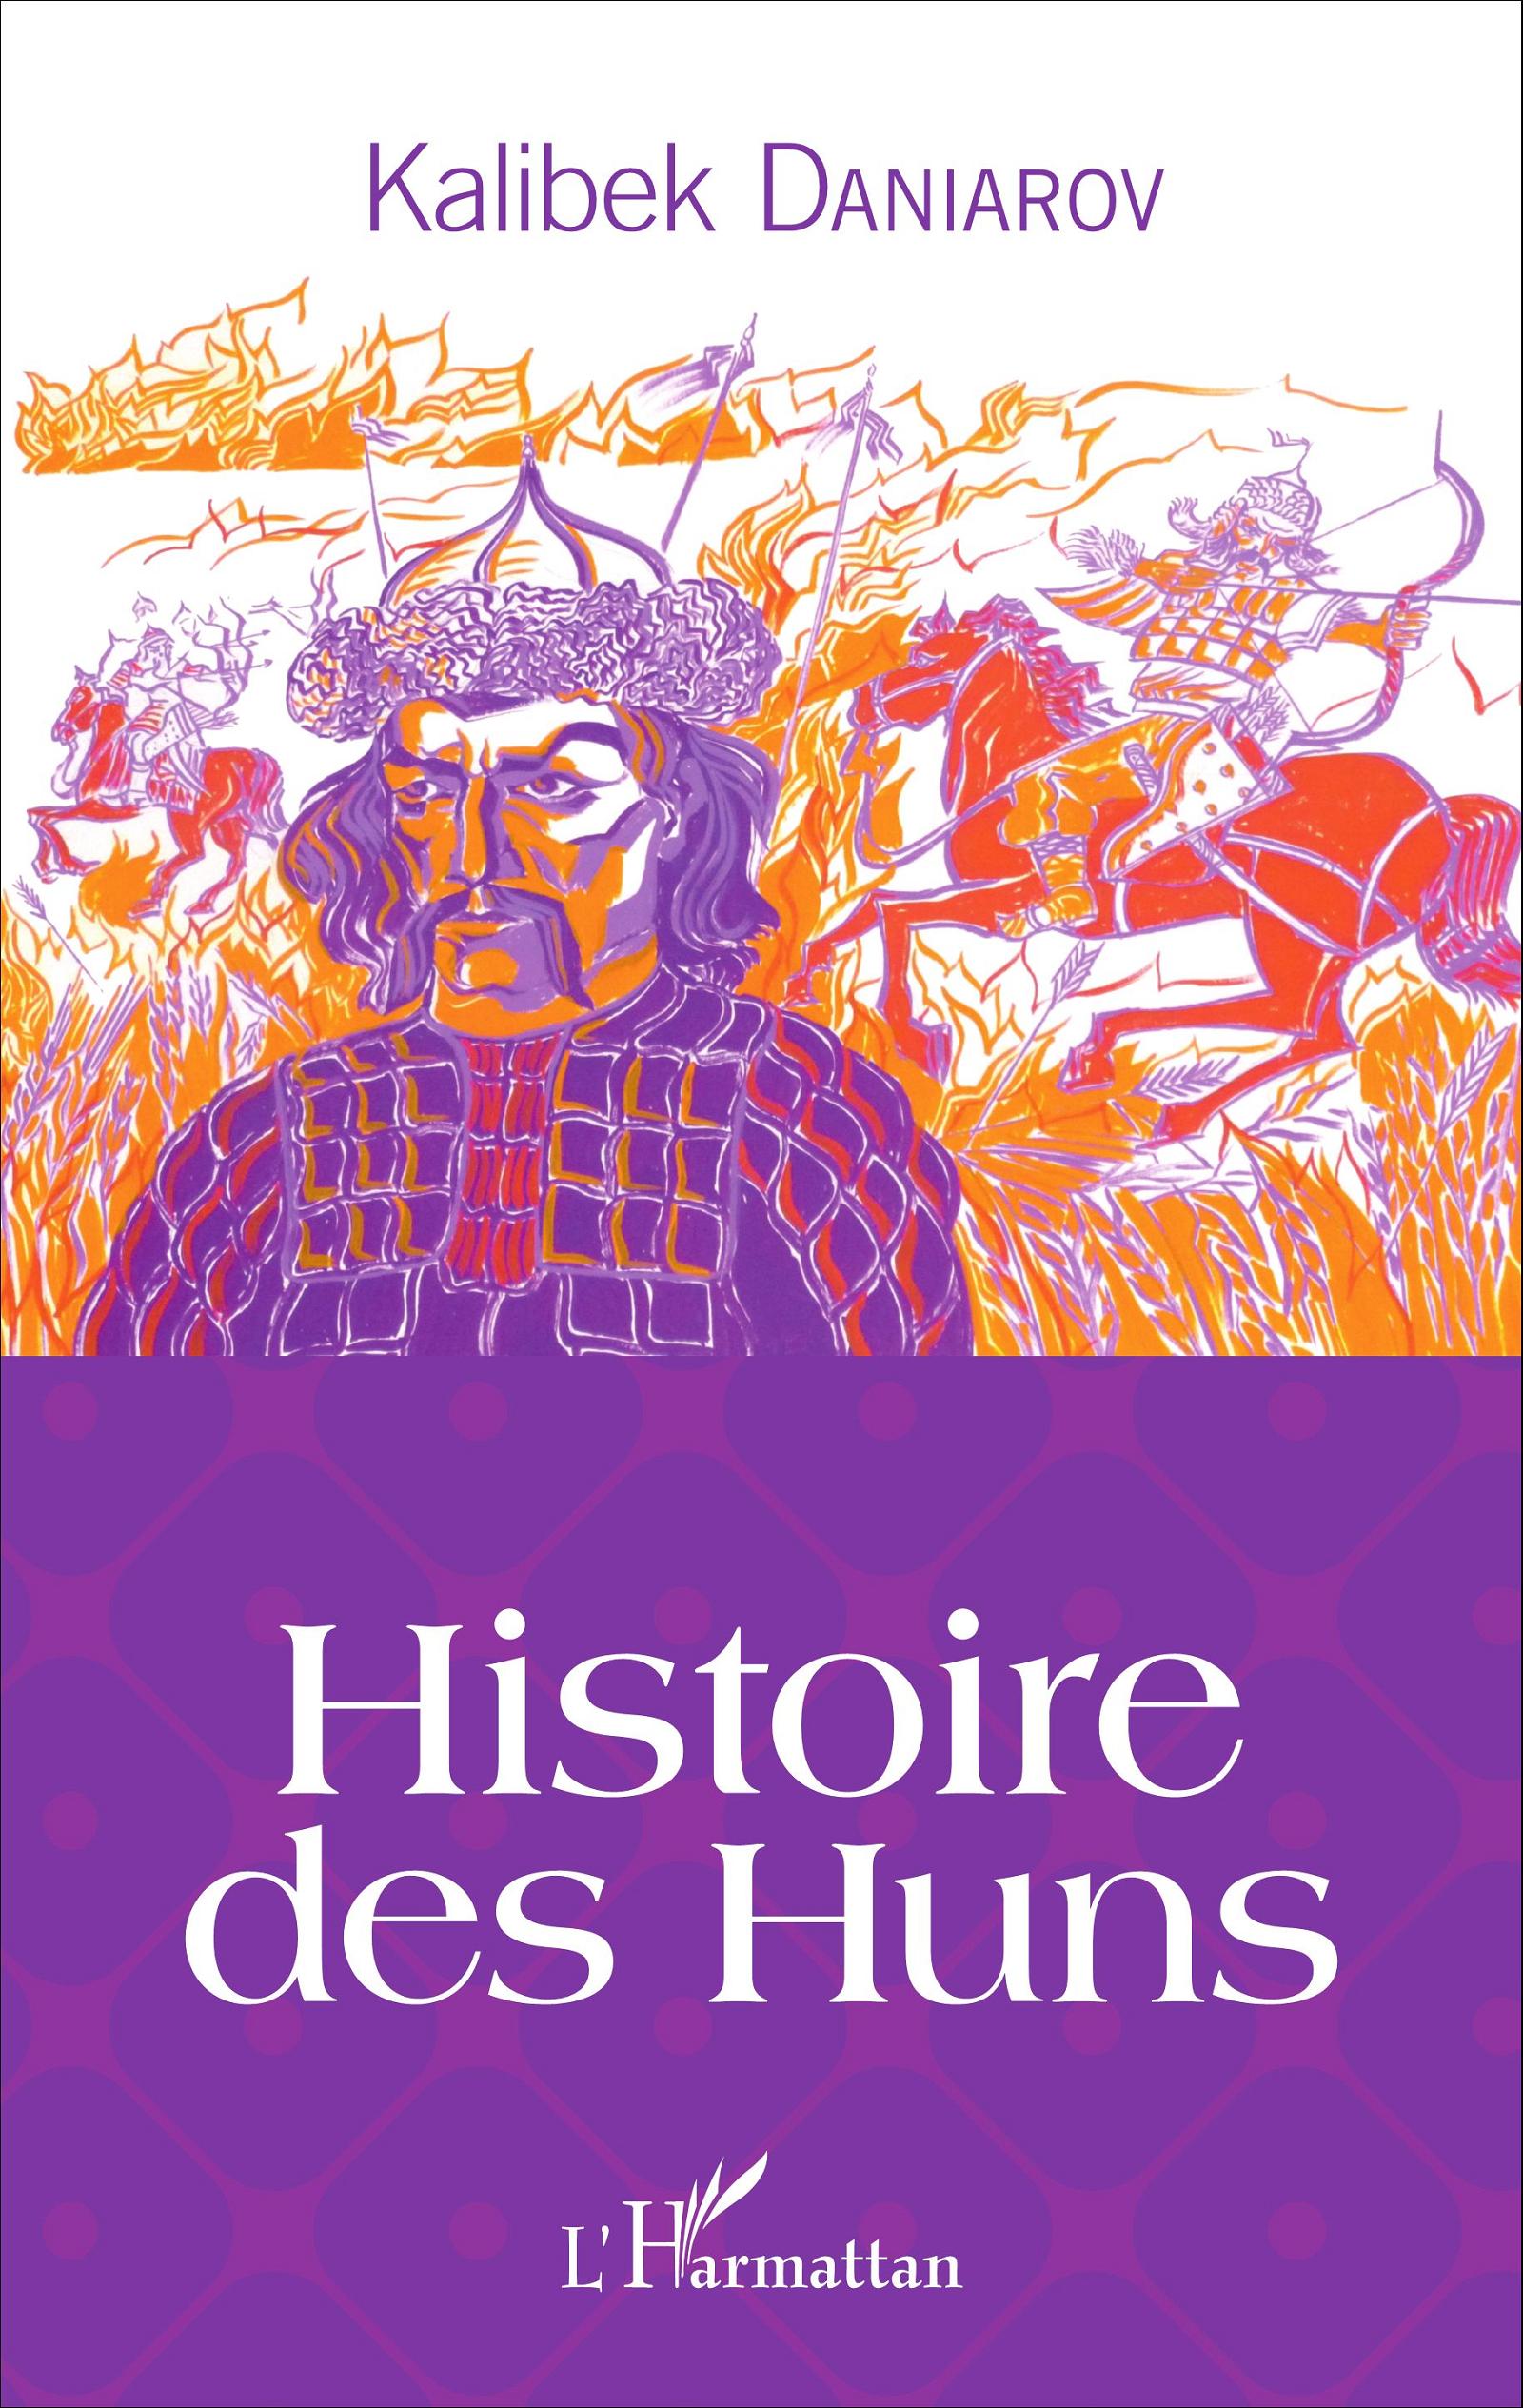 Histoire des Huns, 2016, 276 p.